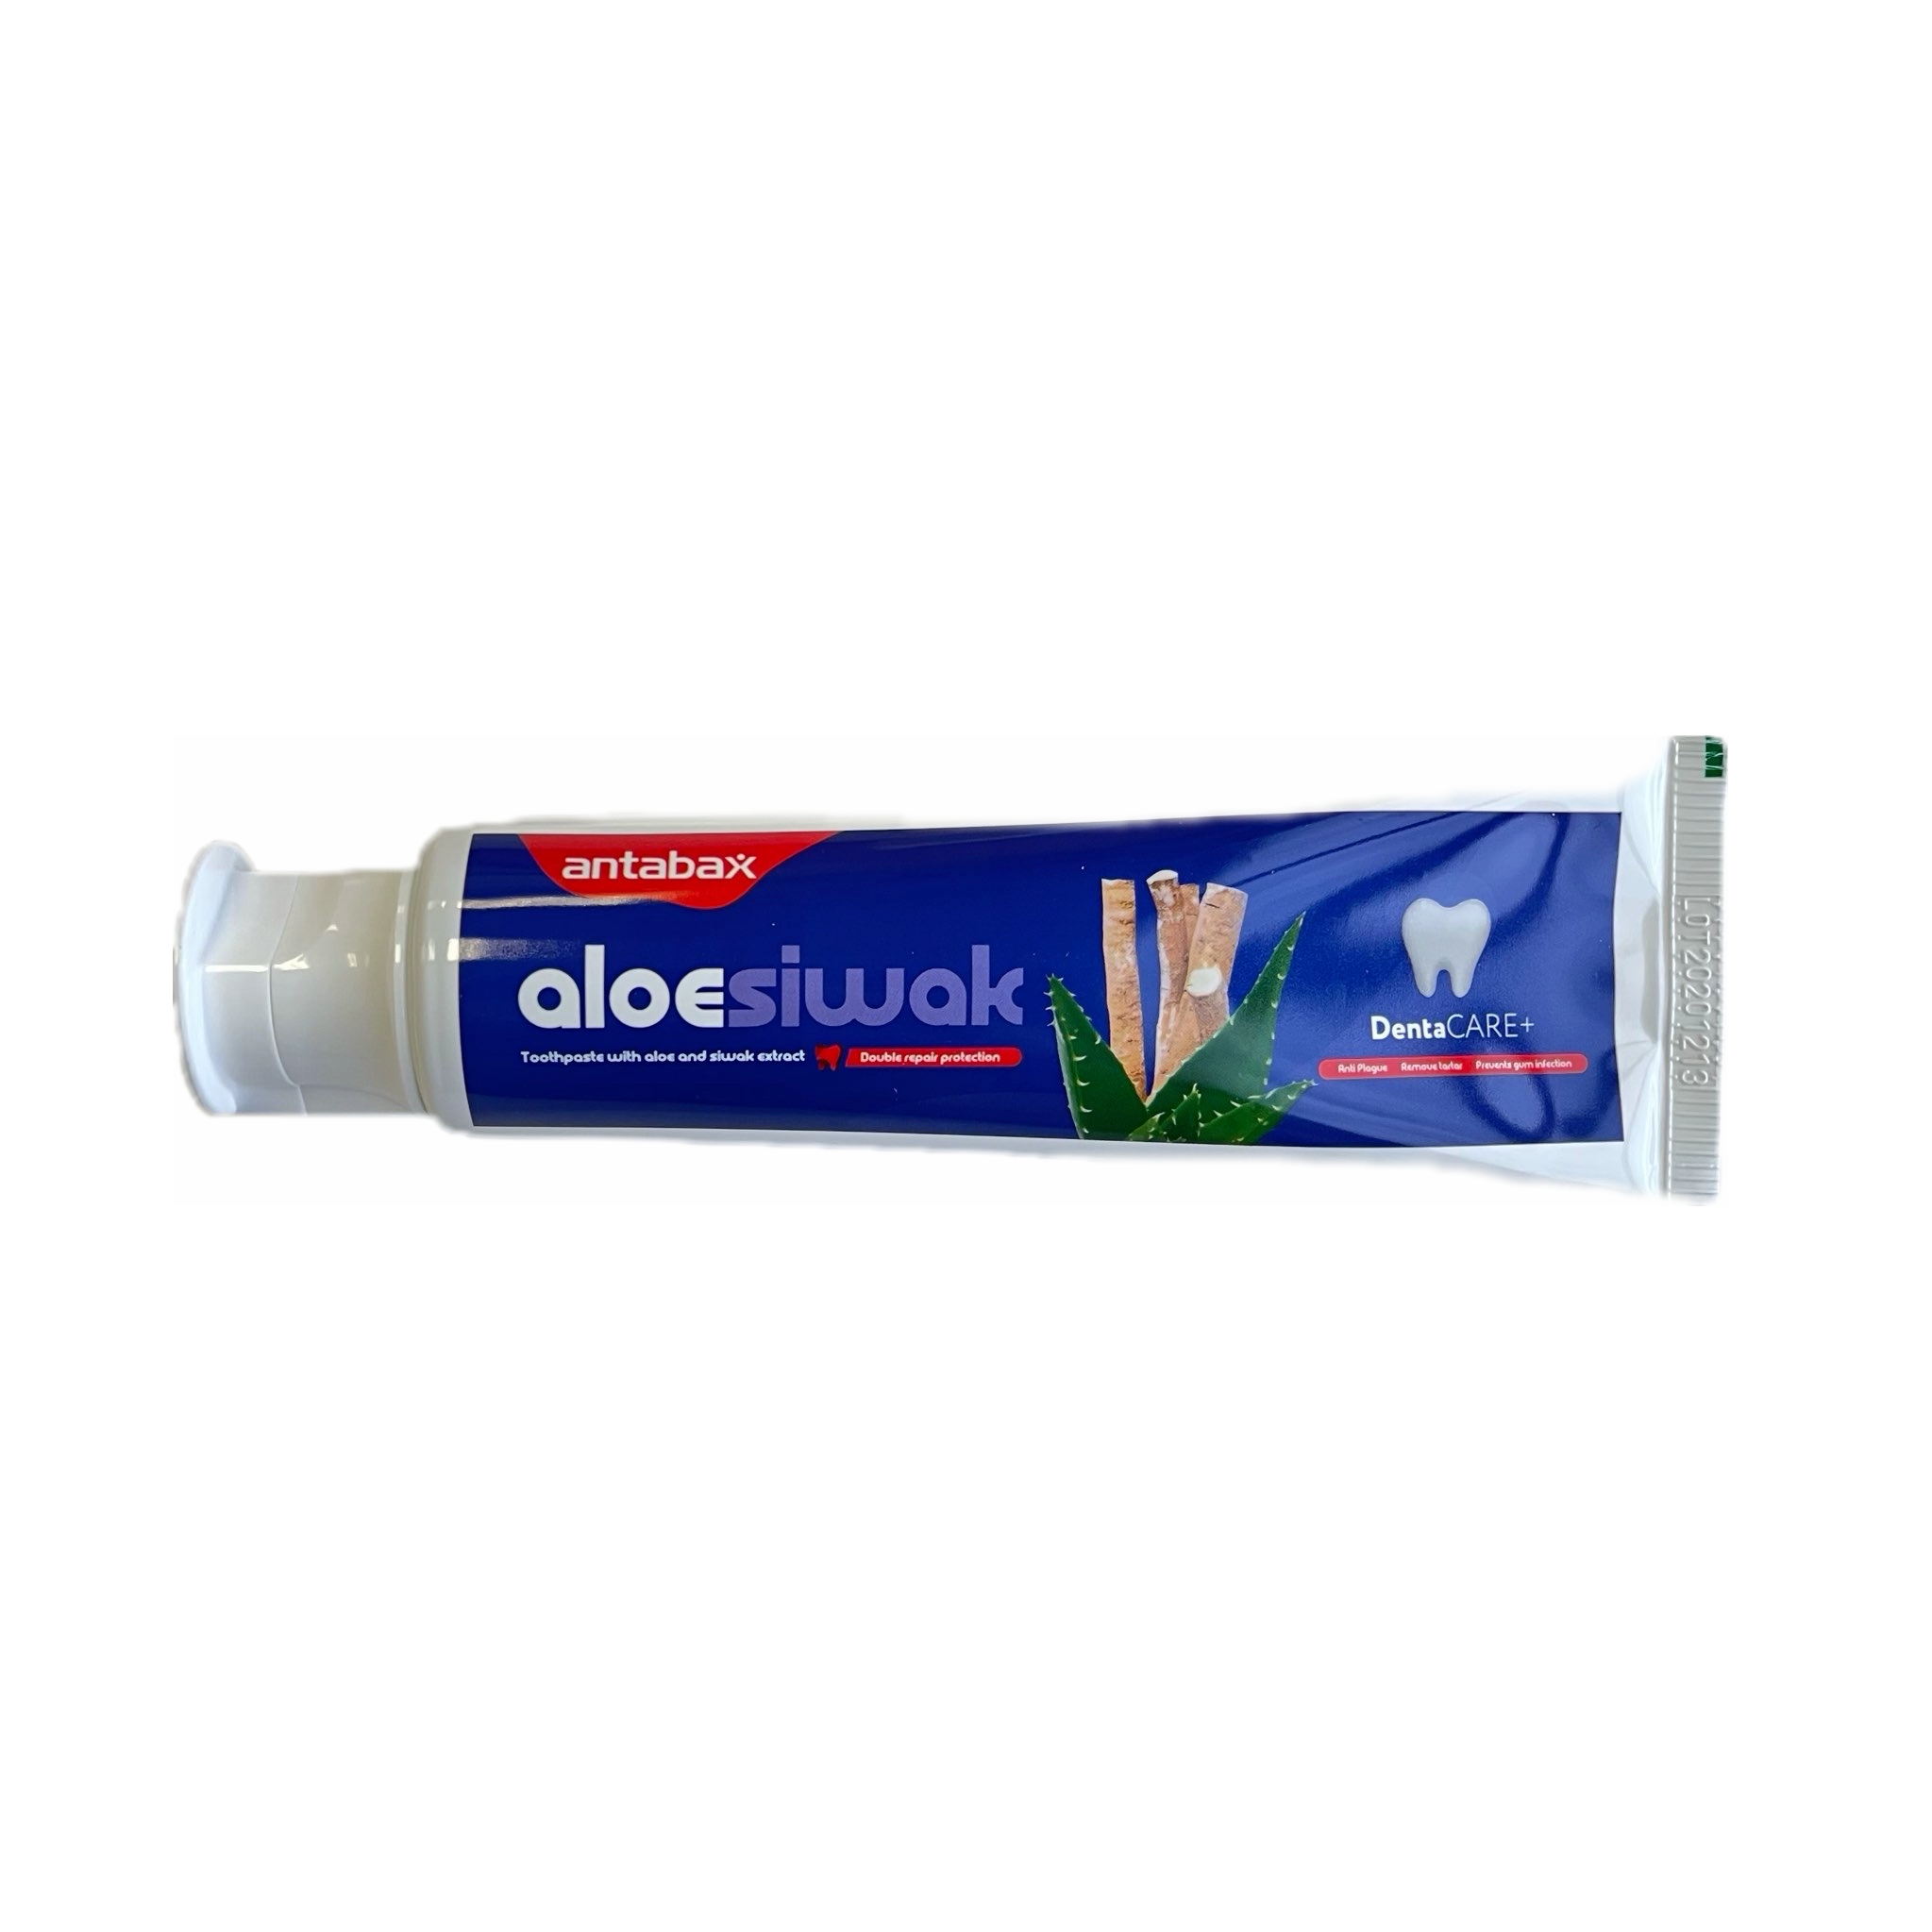 Зубная паста aloe siwak антибактериальная с алоэ, 100 мл